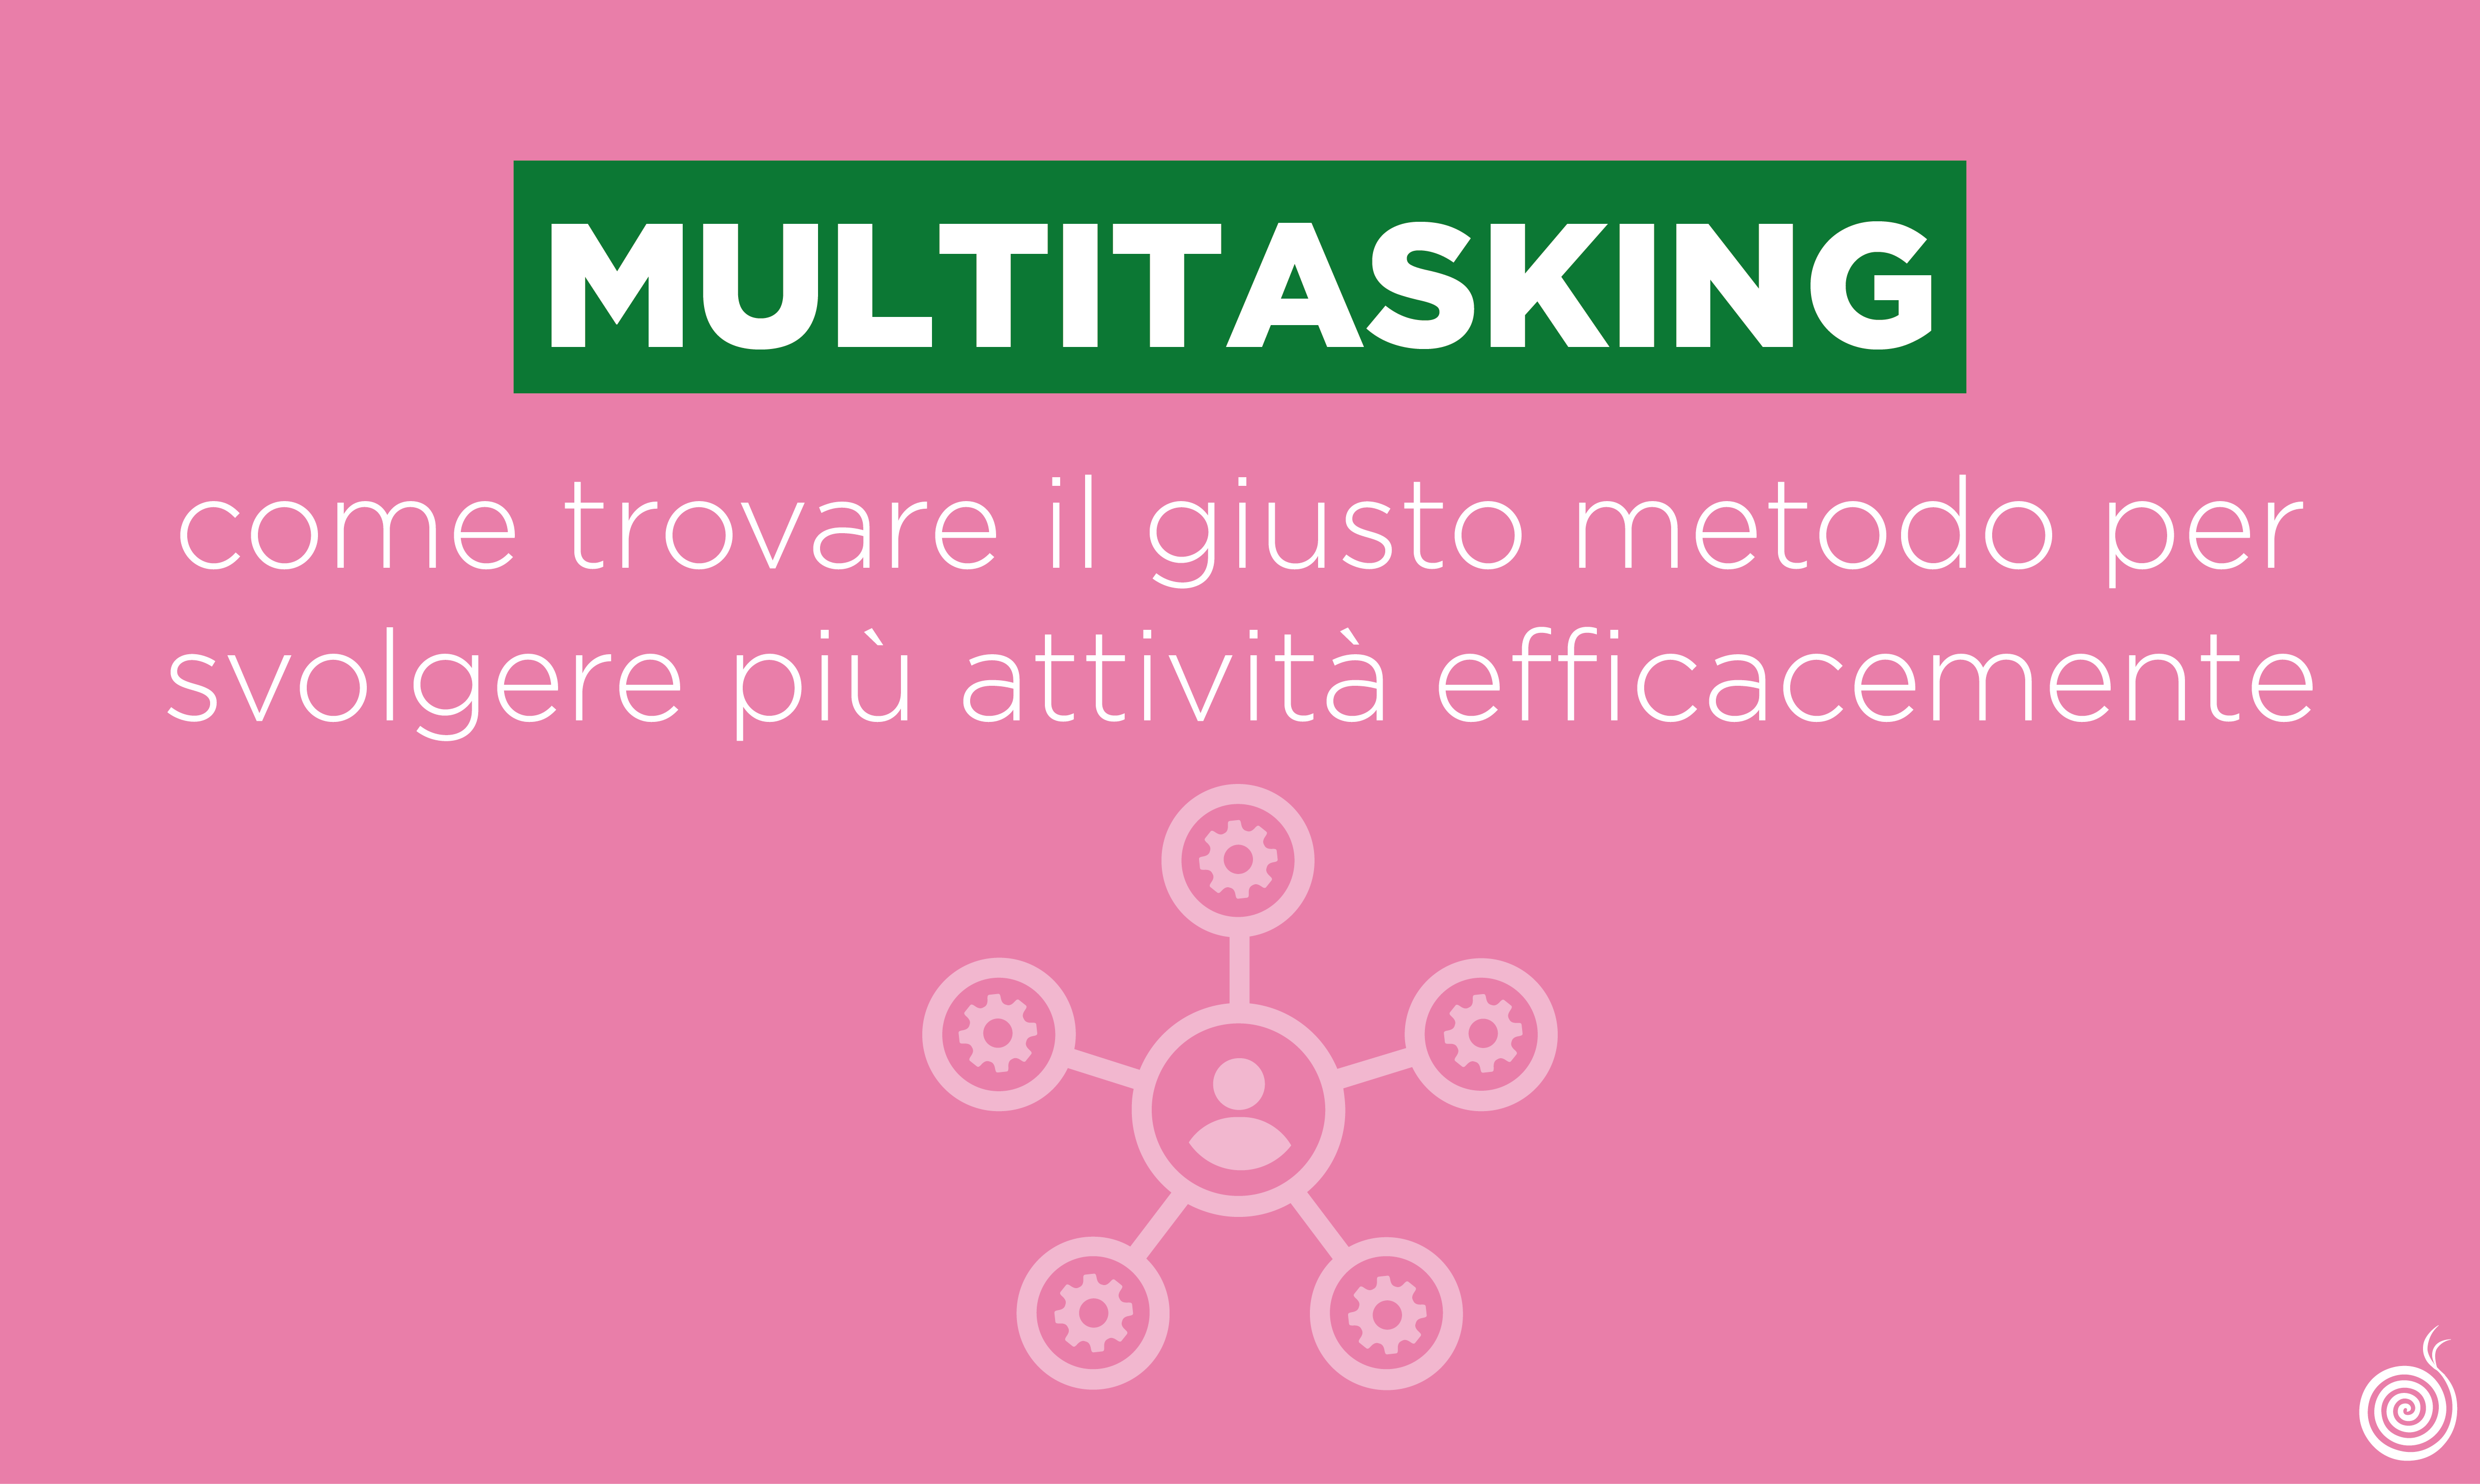 Multitasking: come trovare il giusto metodo per svolgere più attività efficacemente